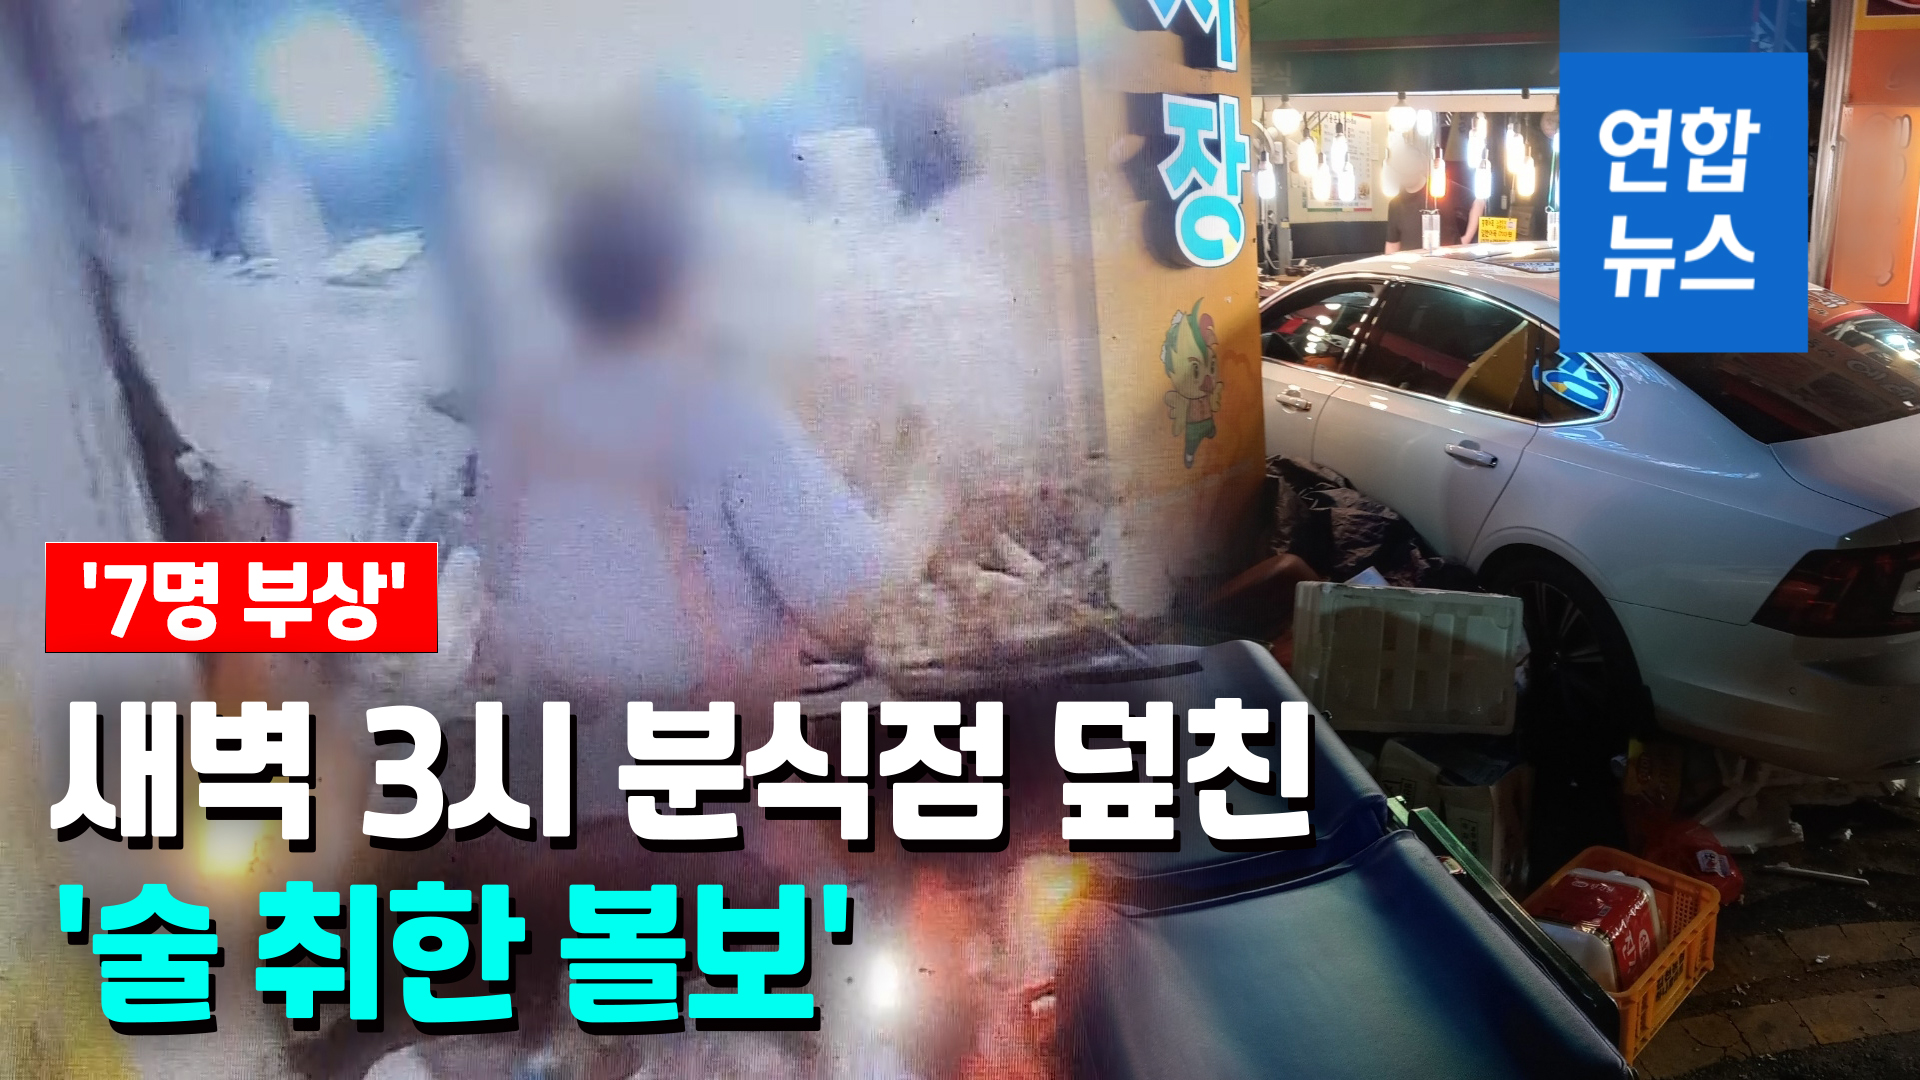 영상 술 취한 볼보 분식점 돌진7명 부상 심장 떨려서 연합뉴스 